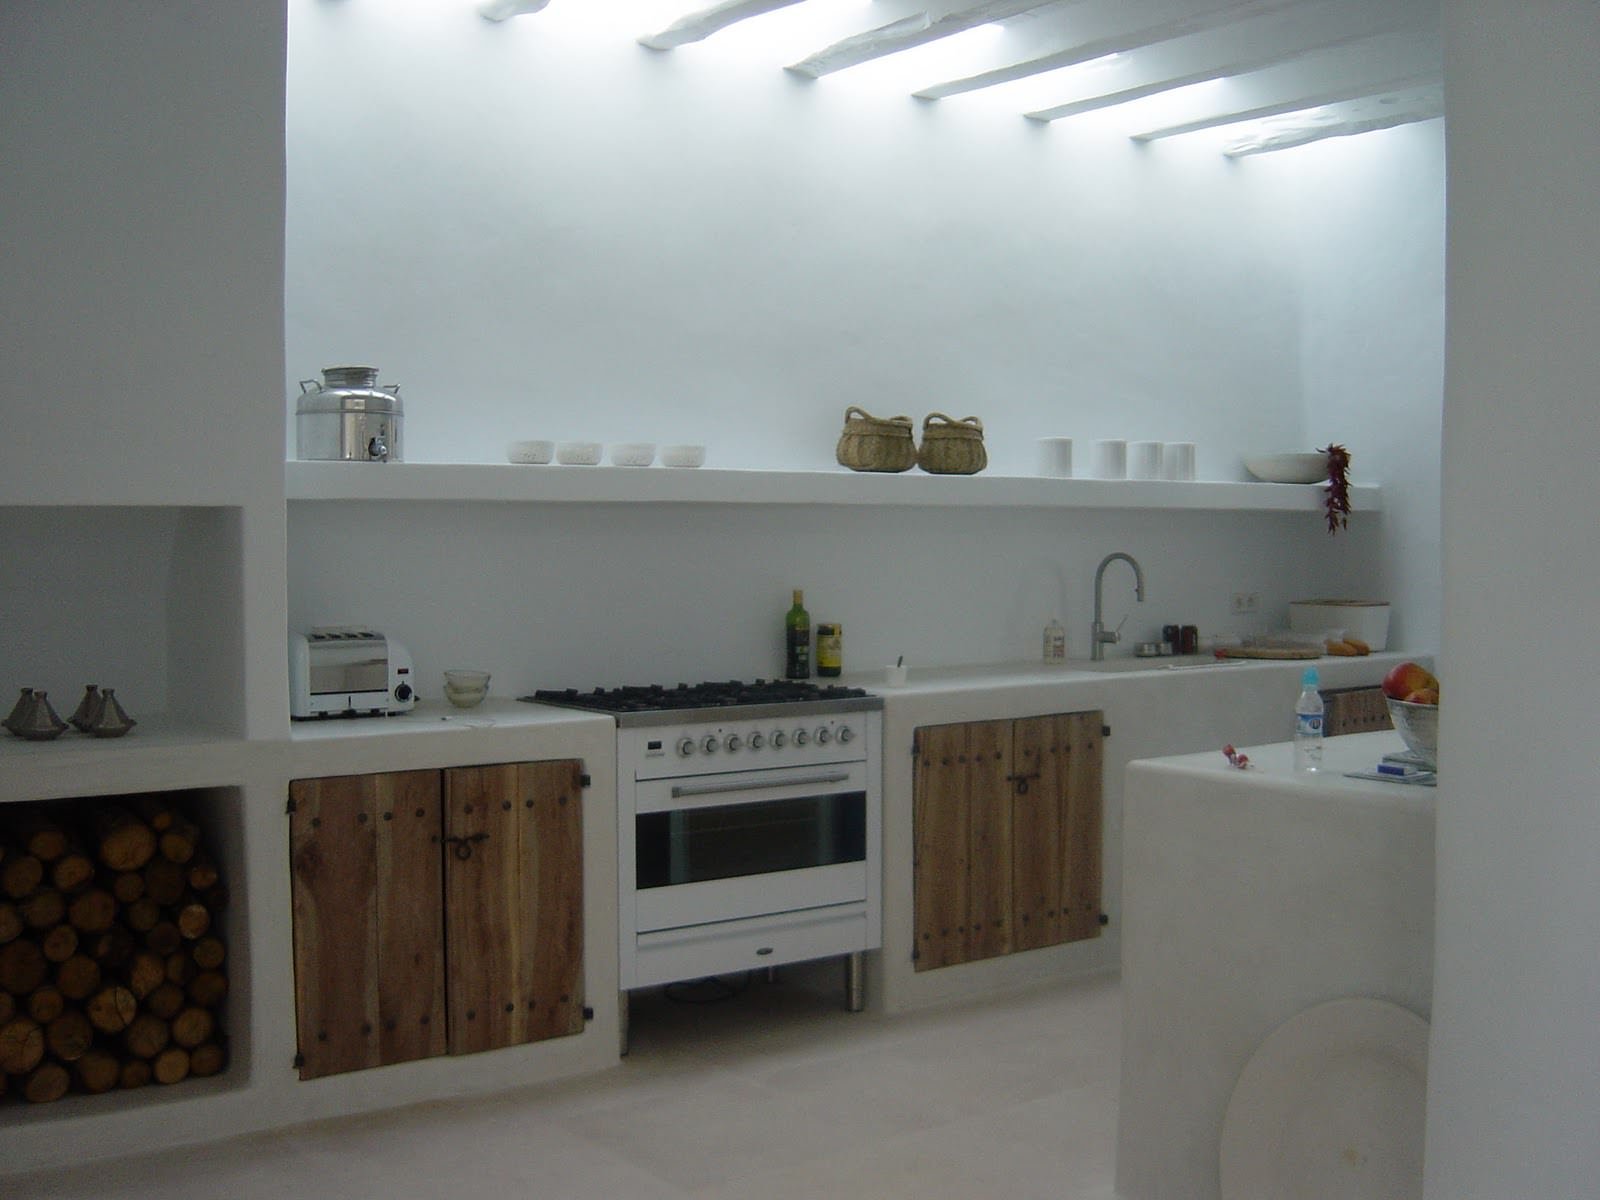 Stupenda cucina rustica moderna, semplice e lineare: sportelli in legno grezzo,  pavimenti in travertino e soffitto e pareti dipinte in bianco - piccolo camino aperto